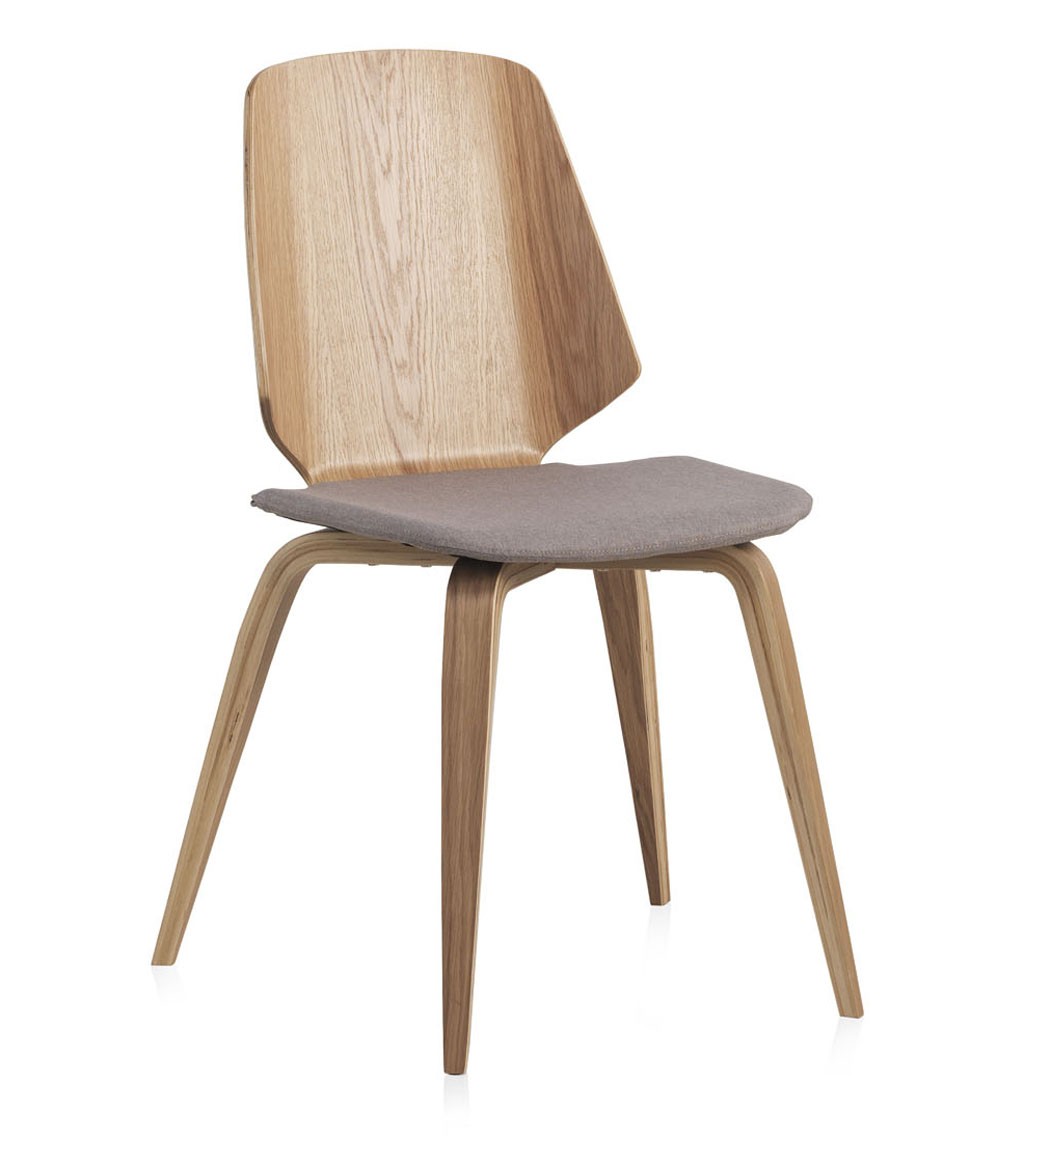 A cadeira Vigo é a combinação perfeita de modernidade e conforto. O seu design contemporâneo e os materiais resistentes, garantem-lhe uma experiência única!